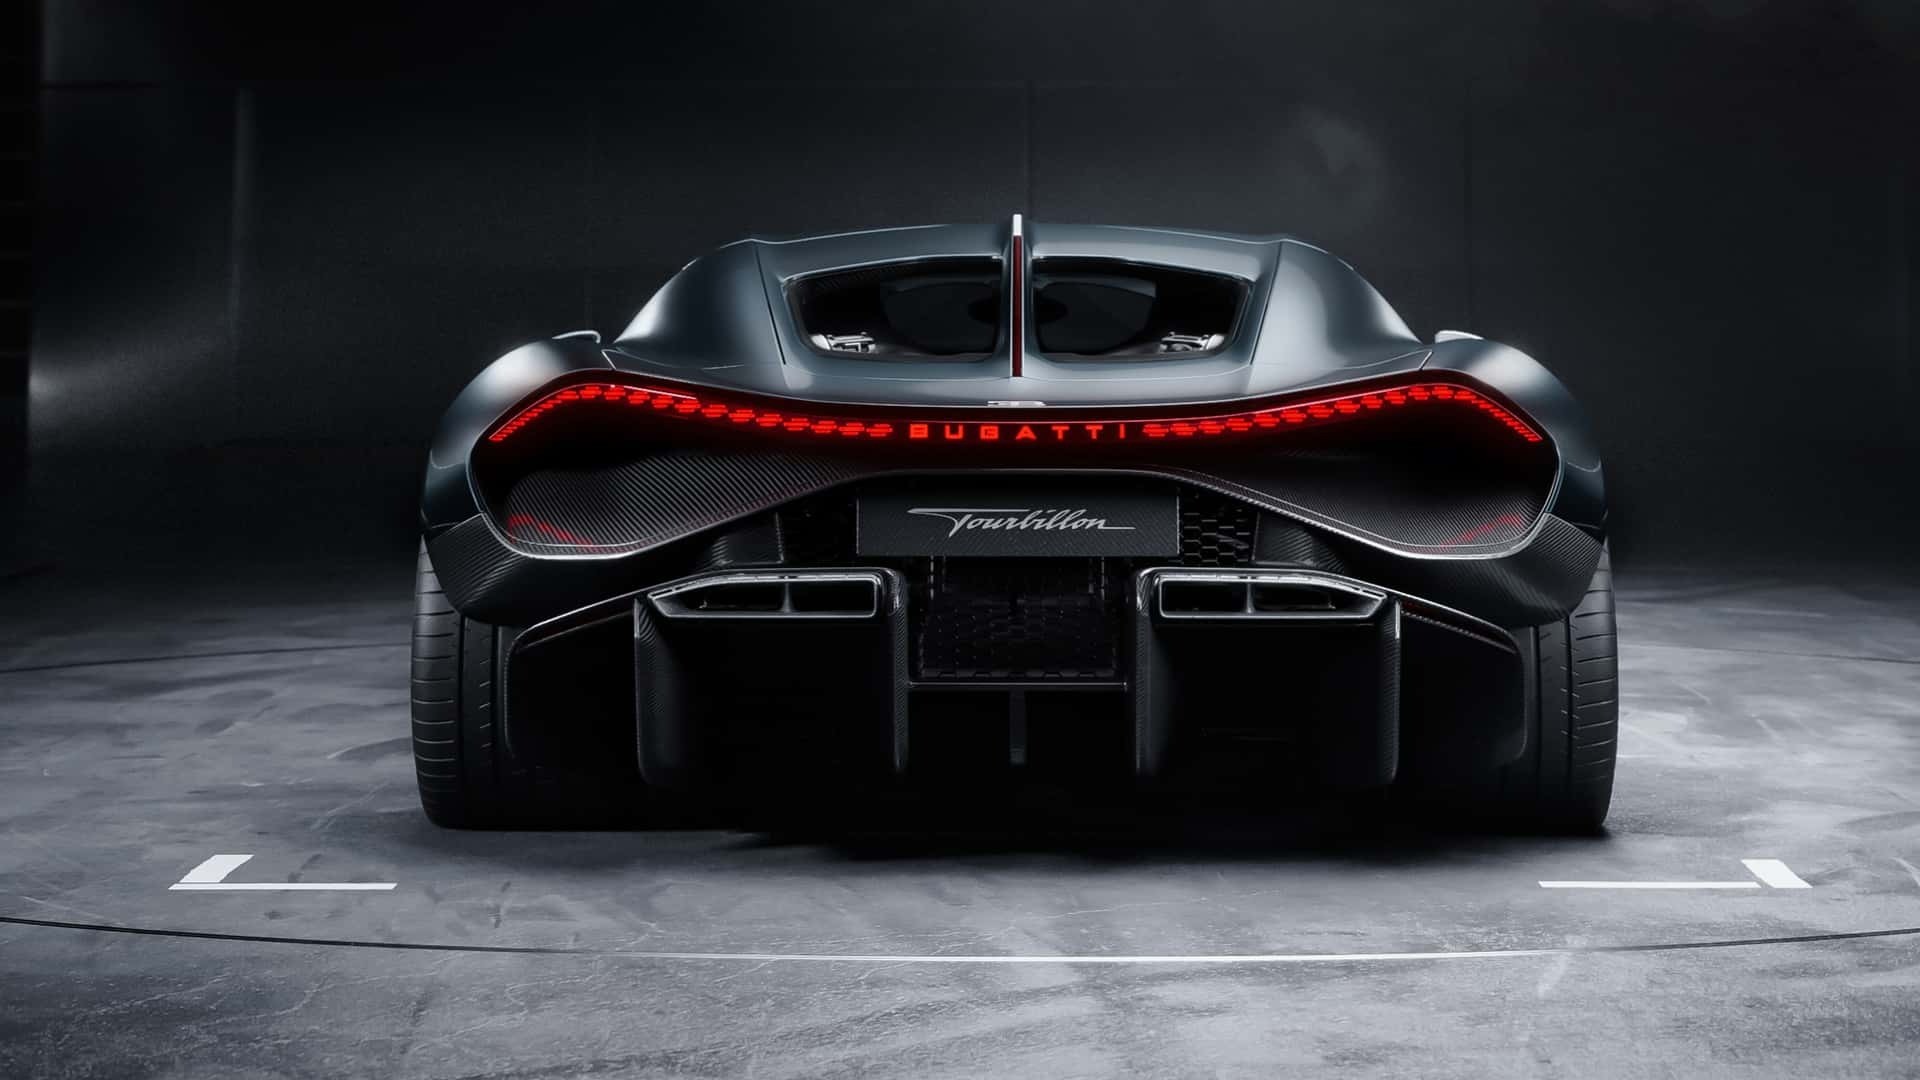 Αυτή είναι η νέα Bugatti Turbillon: Ένα έργο τέχνης αξίας 3,6 εκατομμυρίων ευρώ